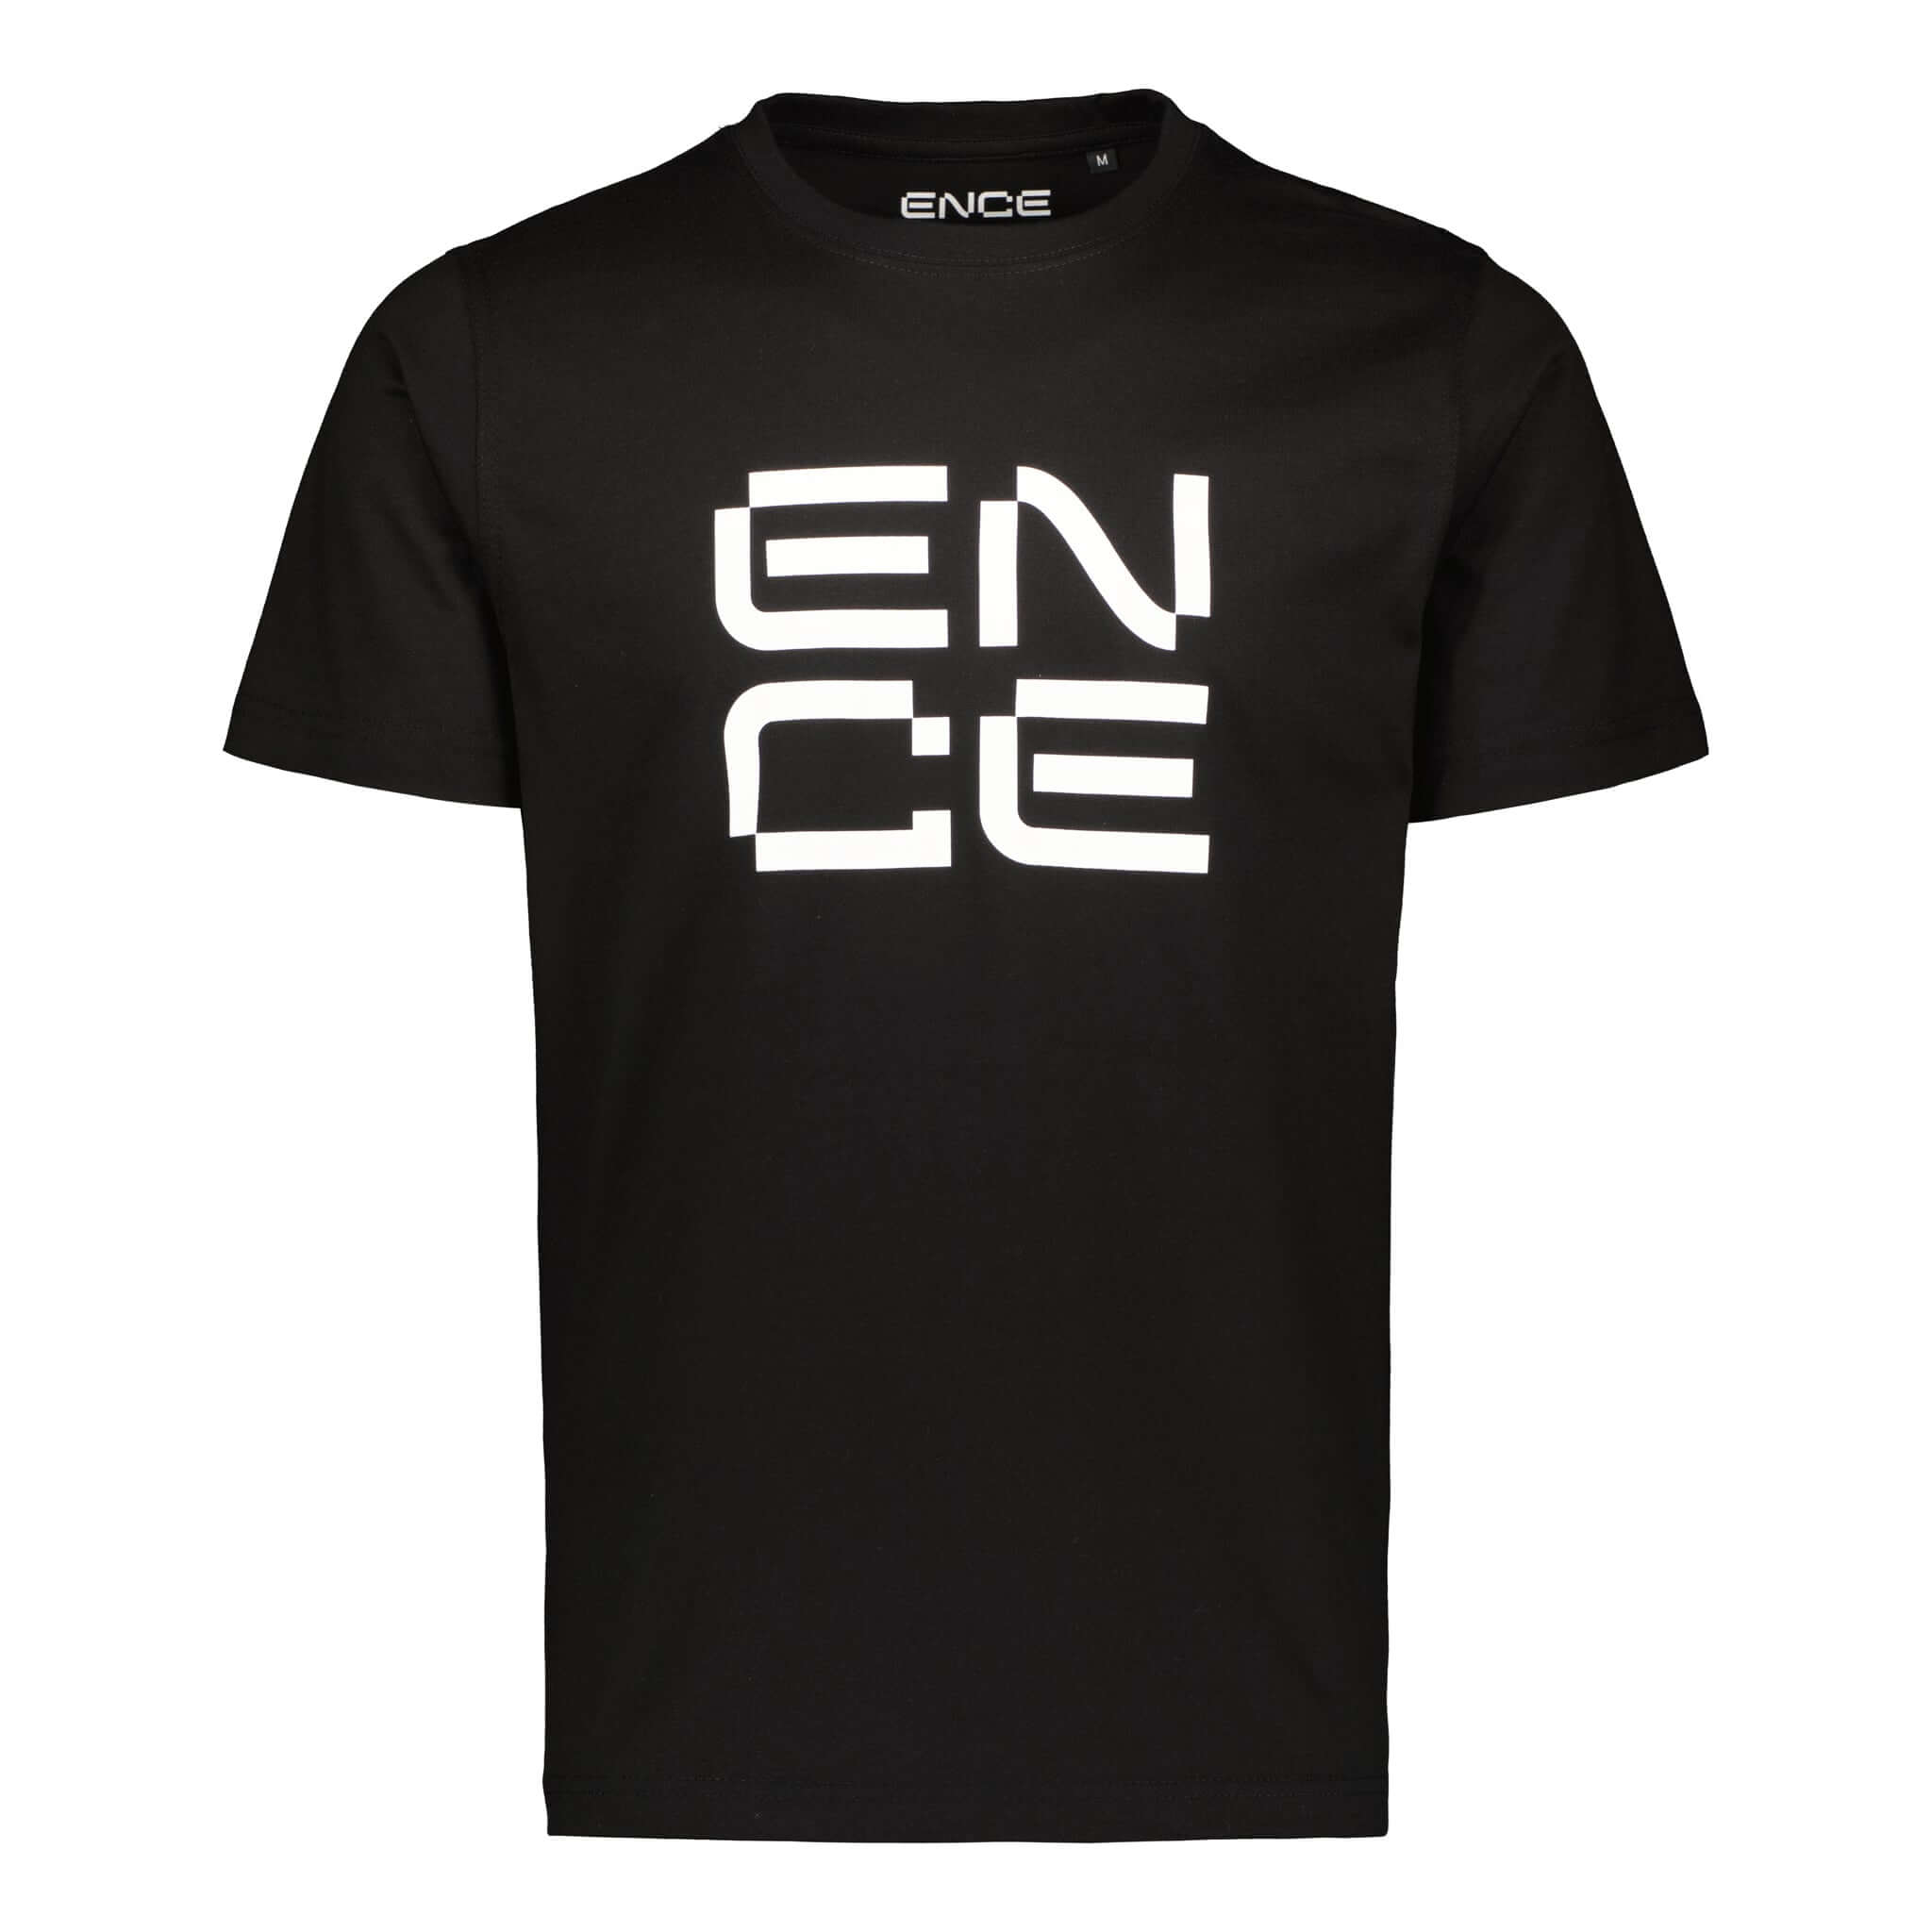 ENCE Square Black T-Shirt